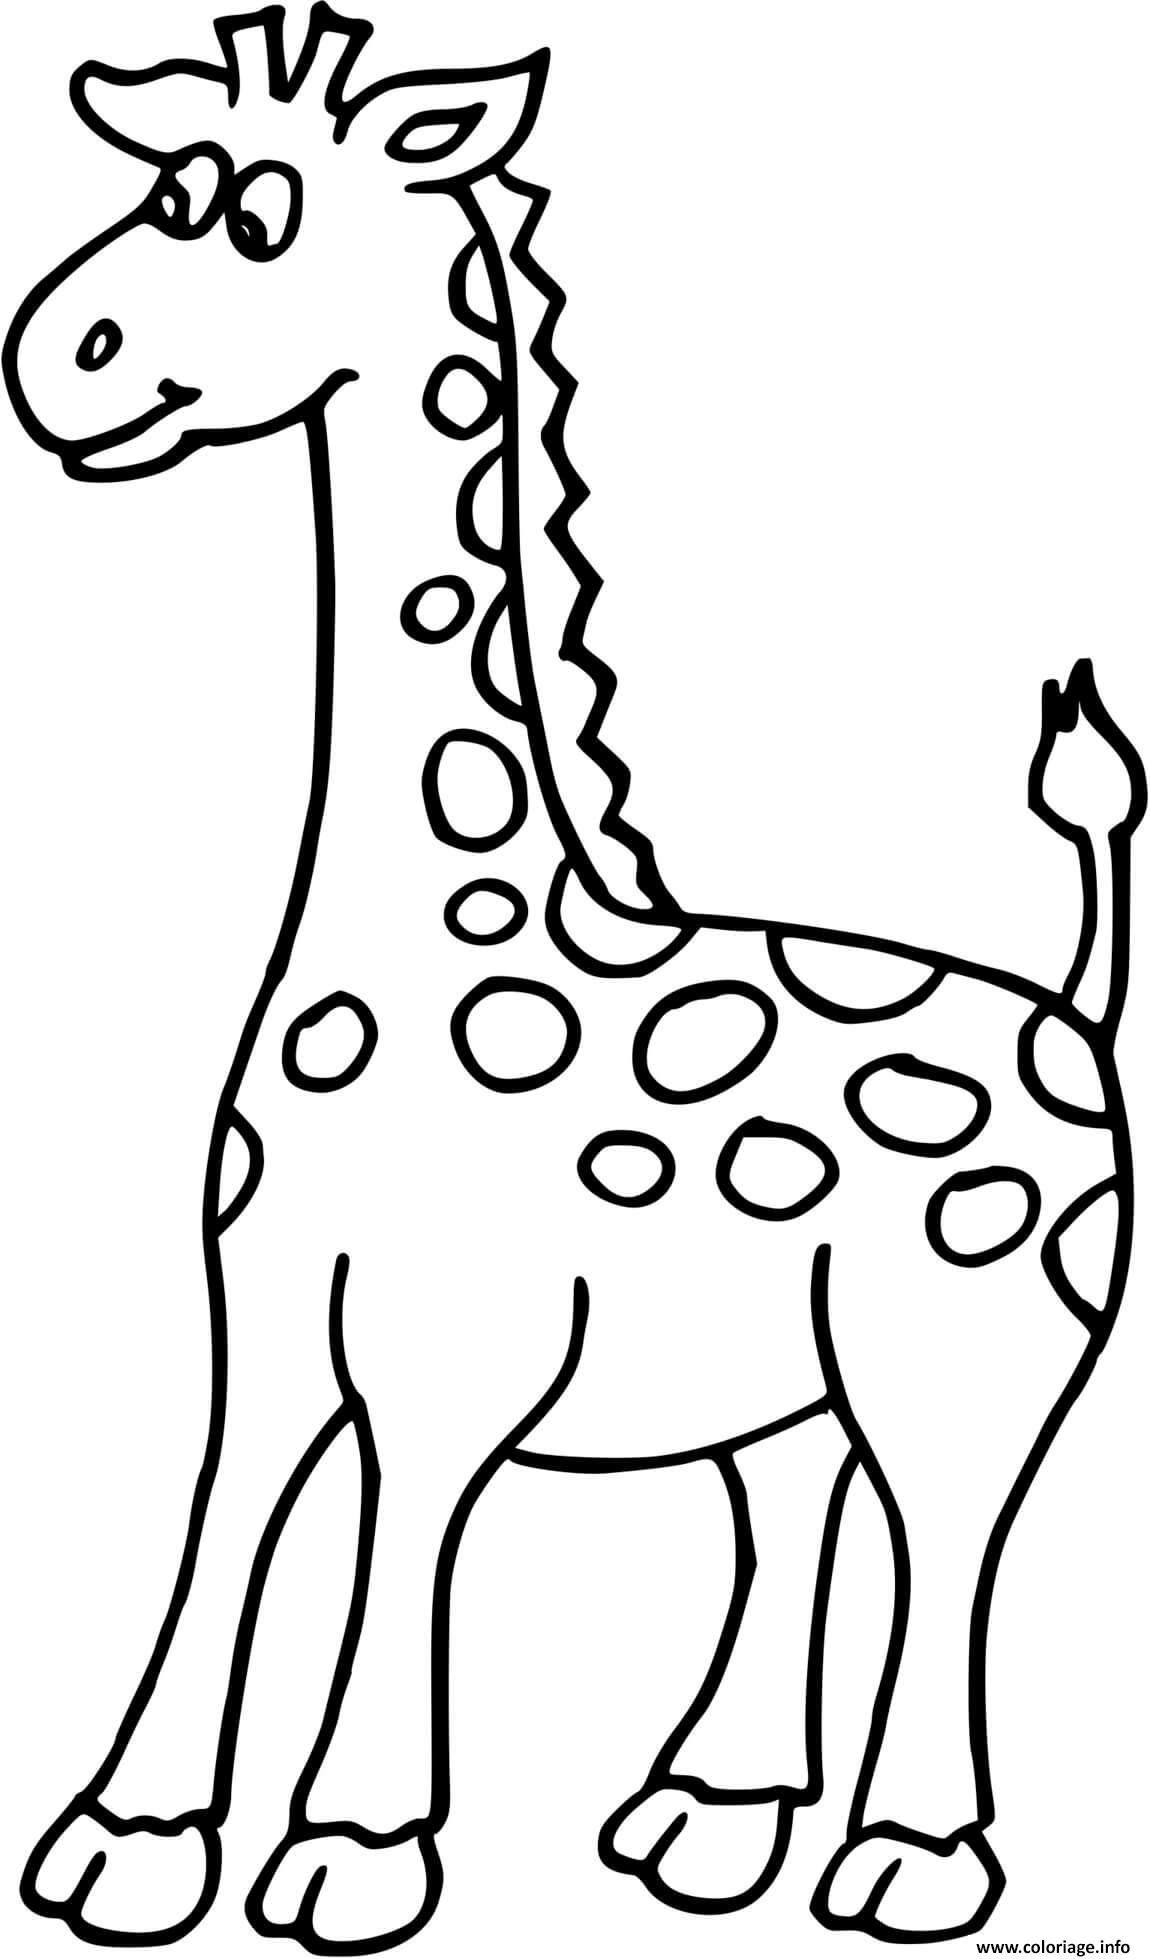 Coloriage Petite Girafe Dessin à Imprimer